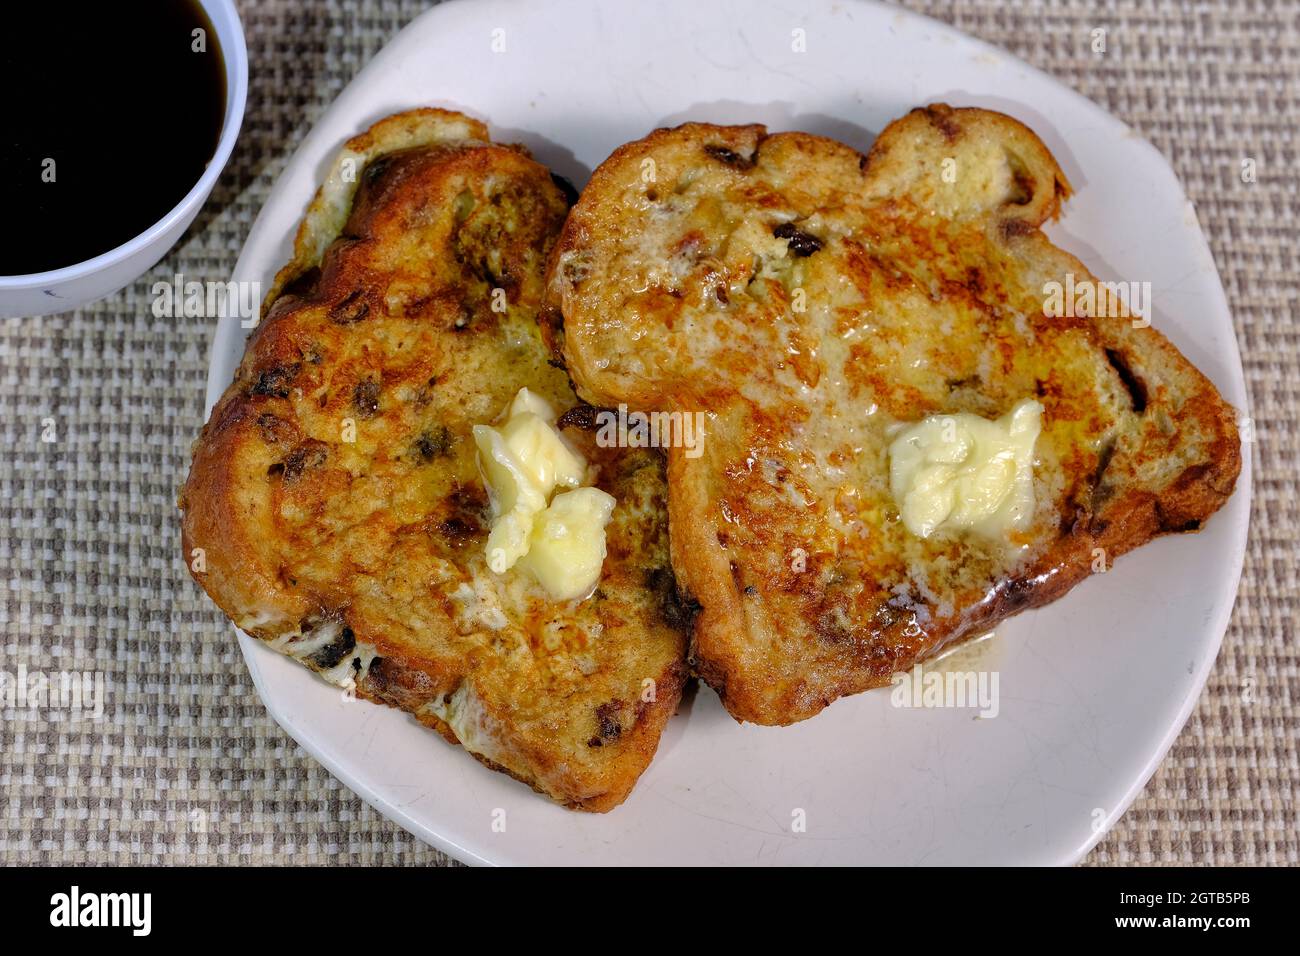 Deux tranches de pain grillé avec un mélange de beurre sur chaque tranche Banque D'Images